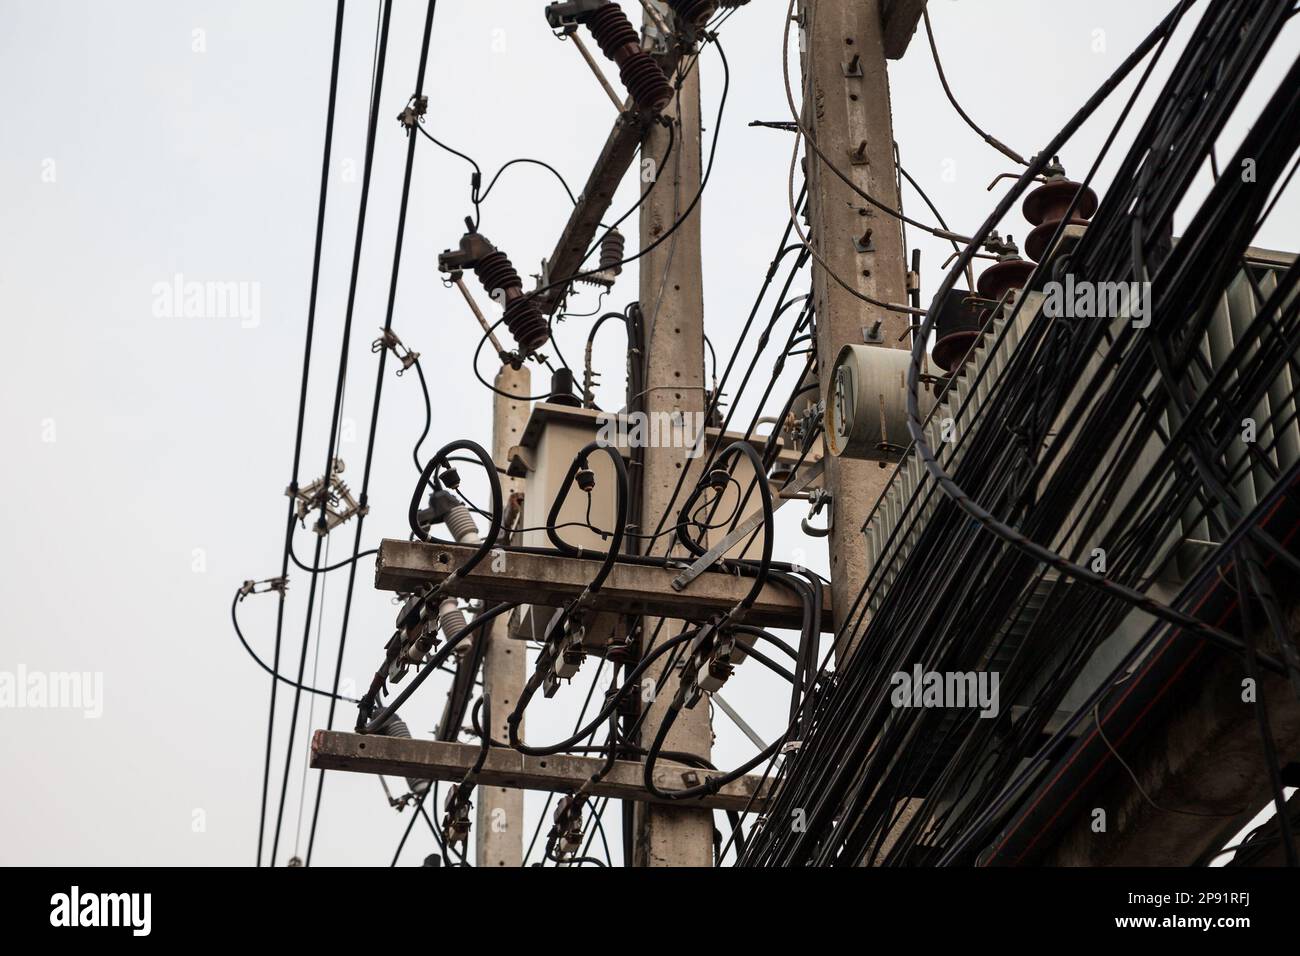 Quelques poteaux électriques, compliqué et beaucoup de câbles Les câbles téléphoniques contre le ciel gris. De nombreux câbles électriques et téléphoniques chaotiques dans une ville Thaïlandaise Banque D'Images